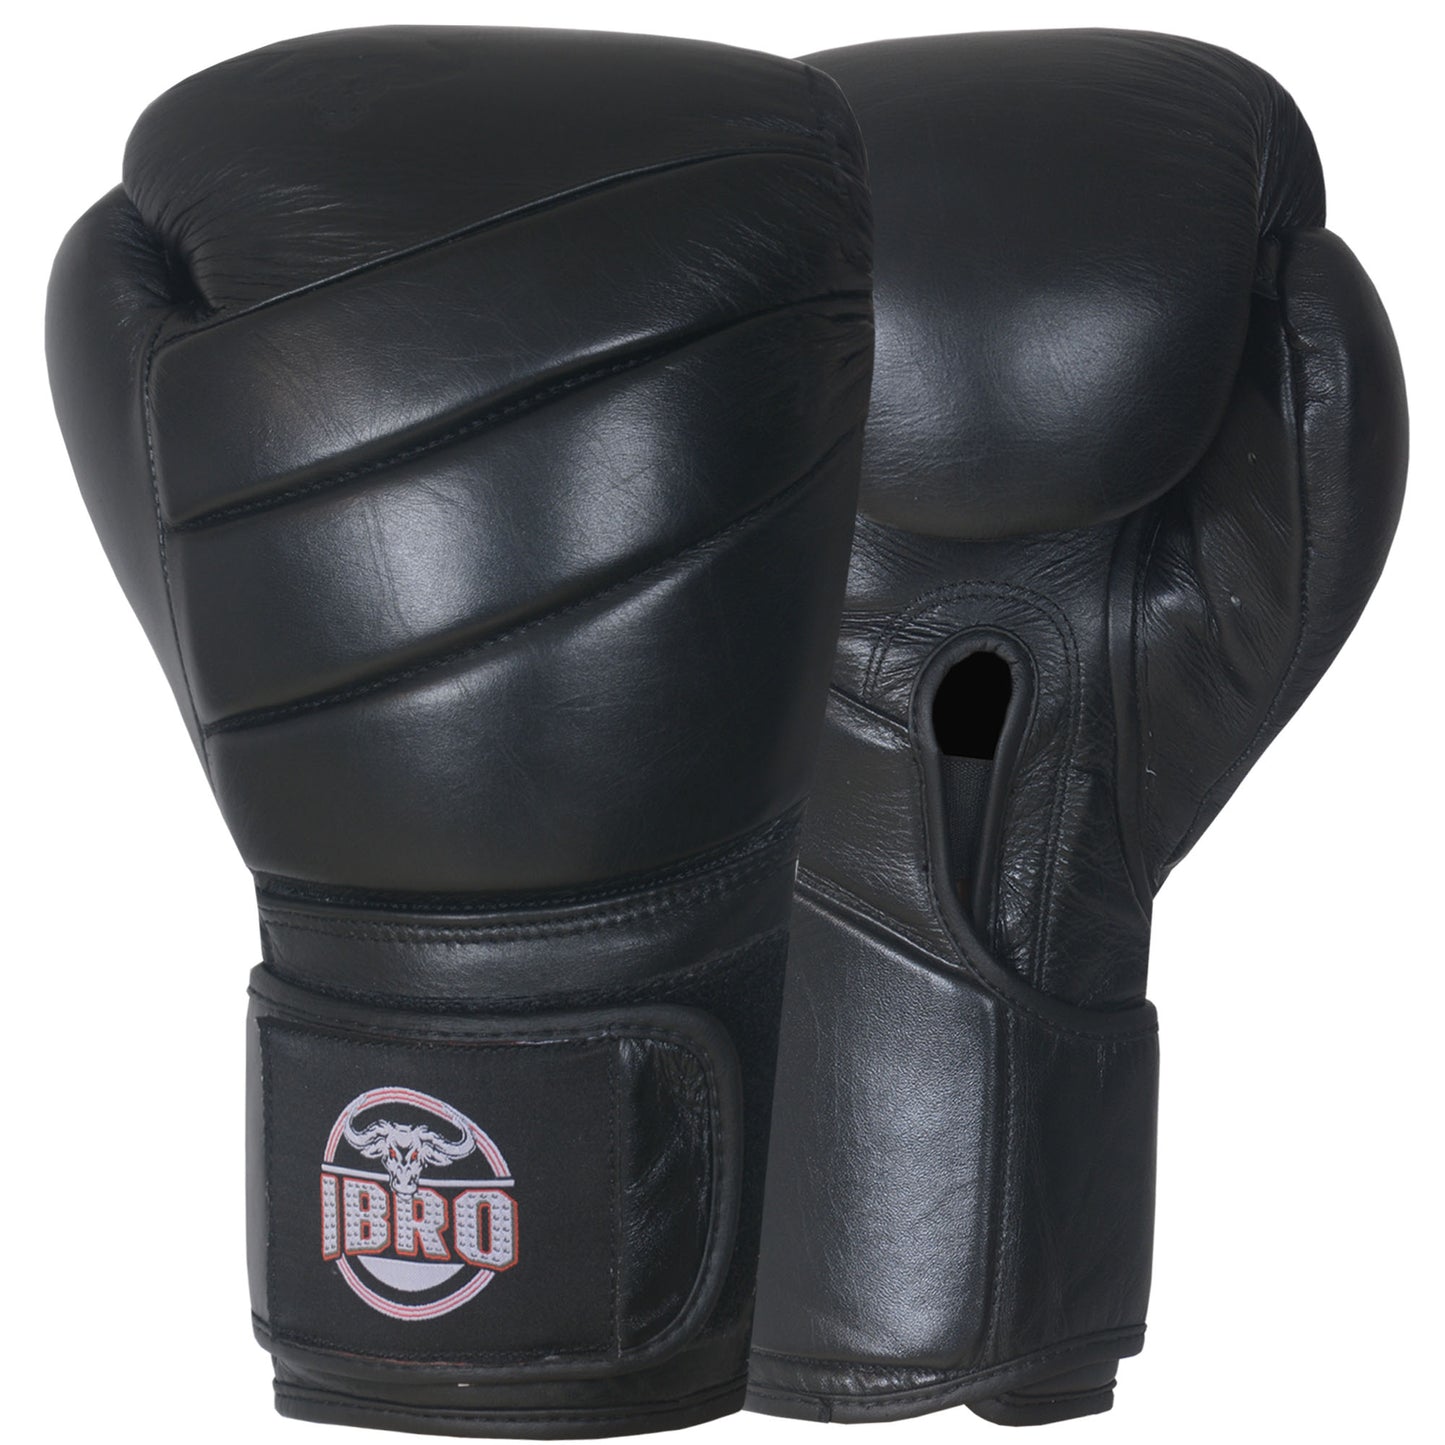 IBRO Iconic PRO Leather Boxing Training Gloves Black